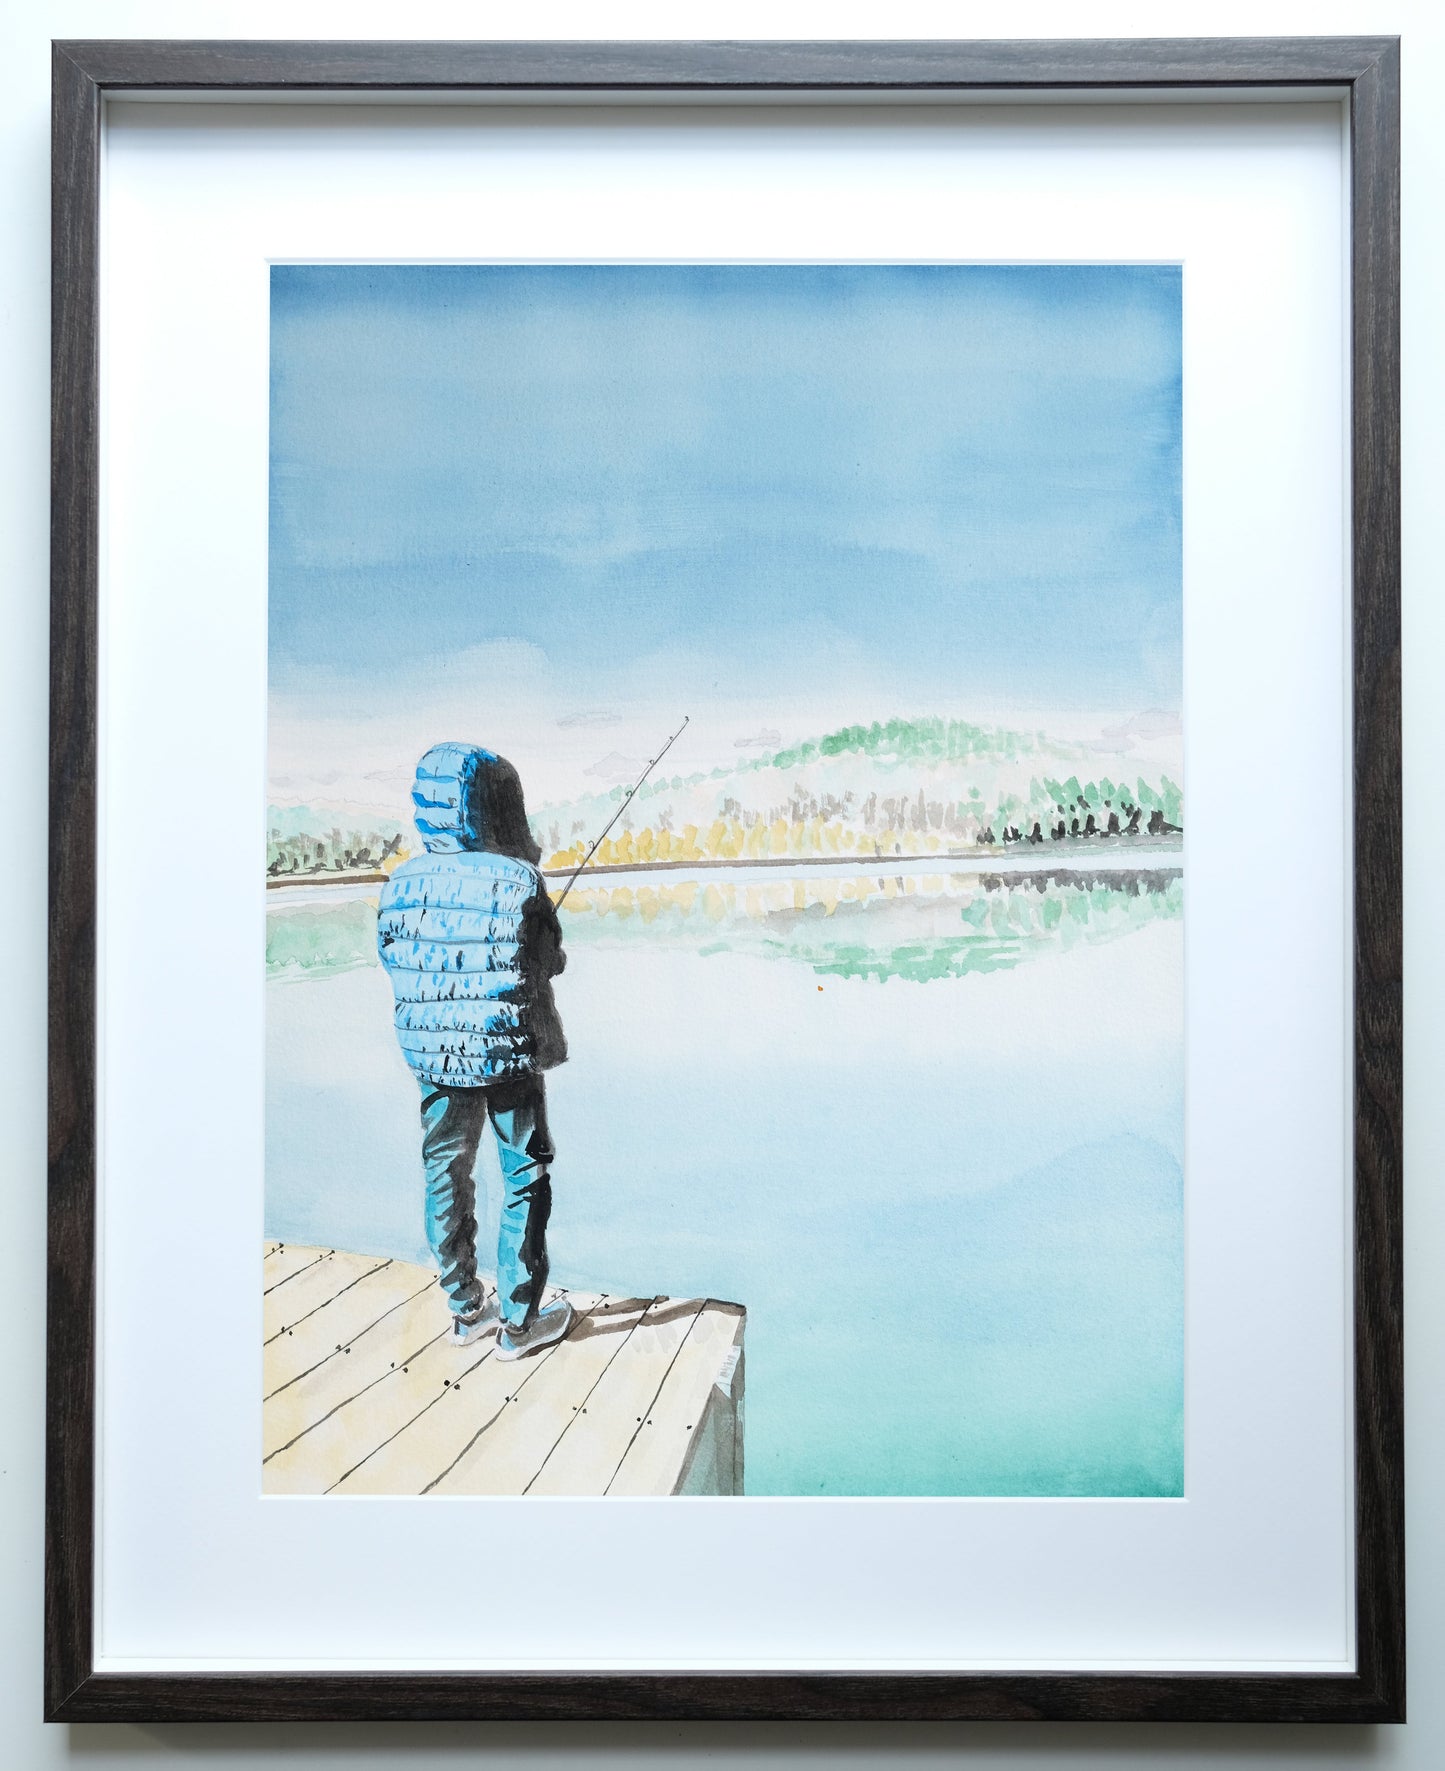 Boy Fishing at Mountain Lake, NY